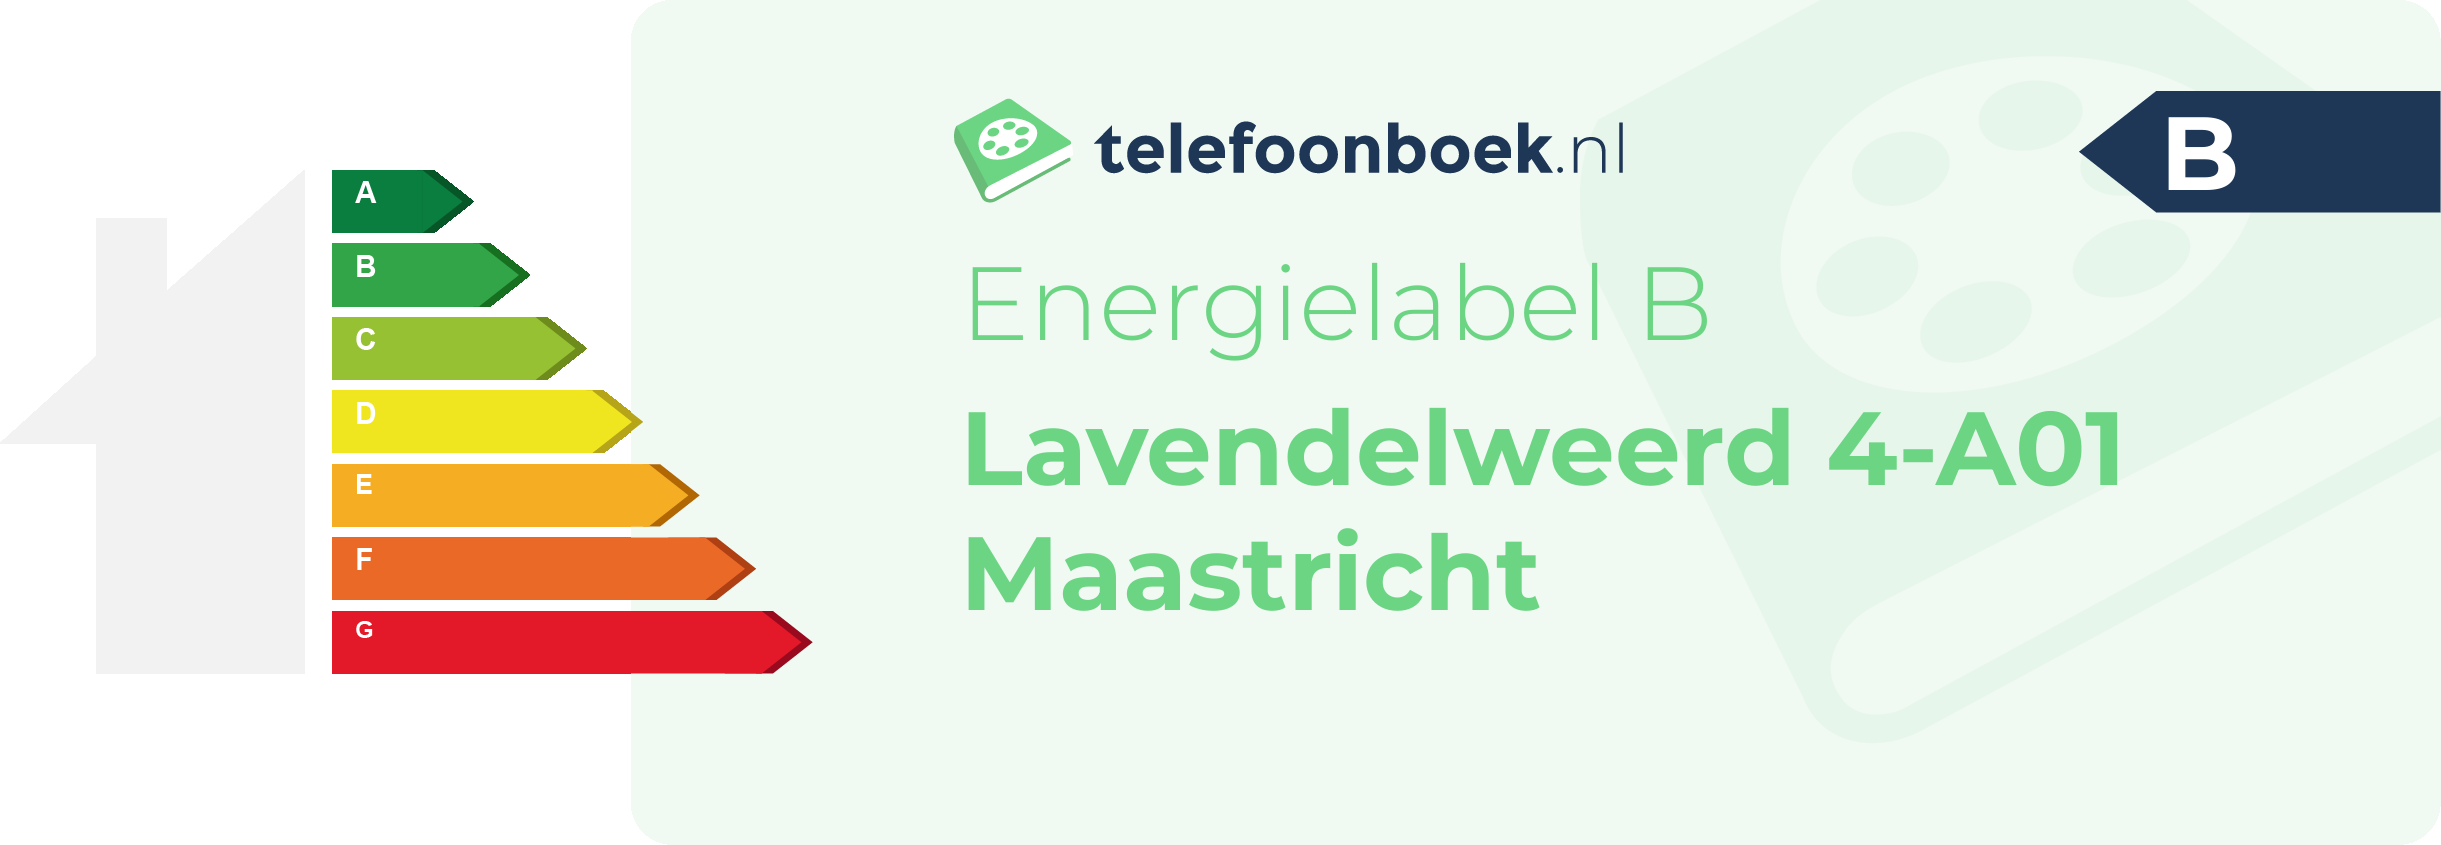 Energielabel Lavendelweerd 4-A01 Maastricht